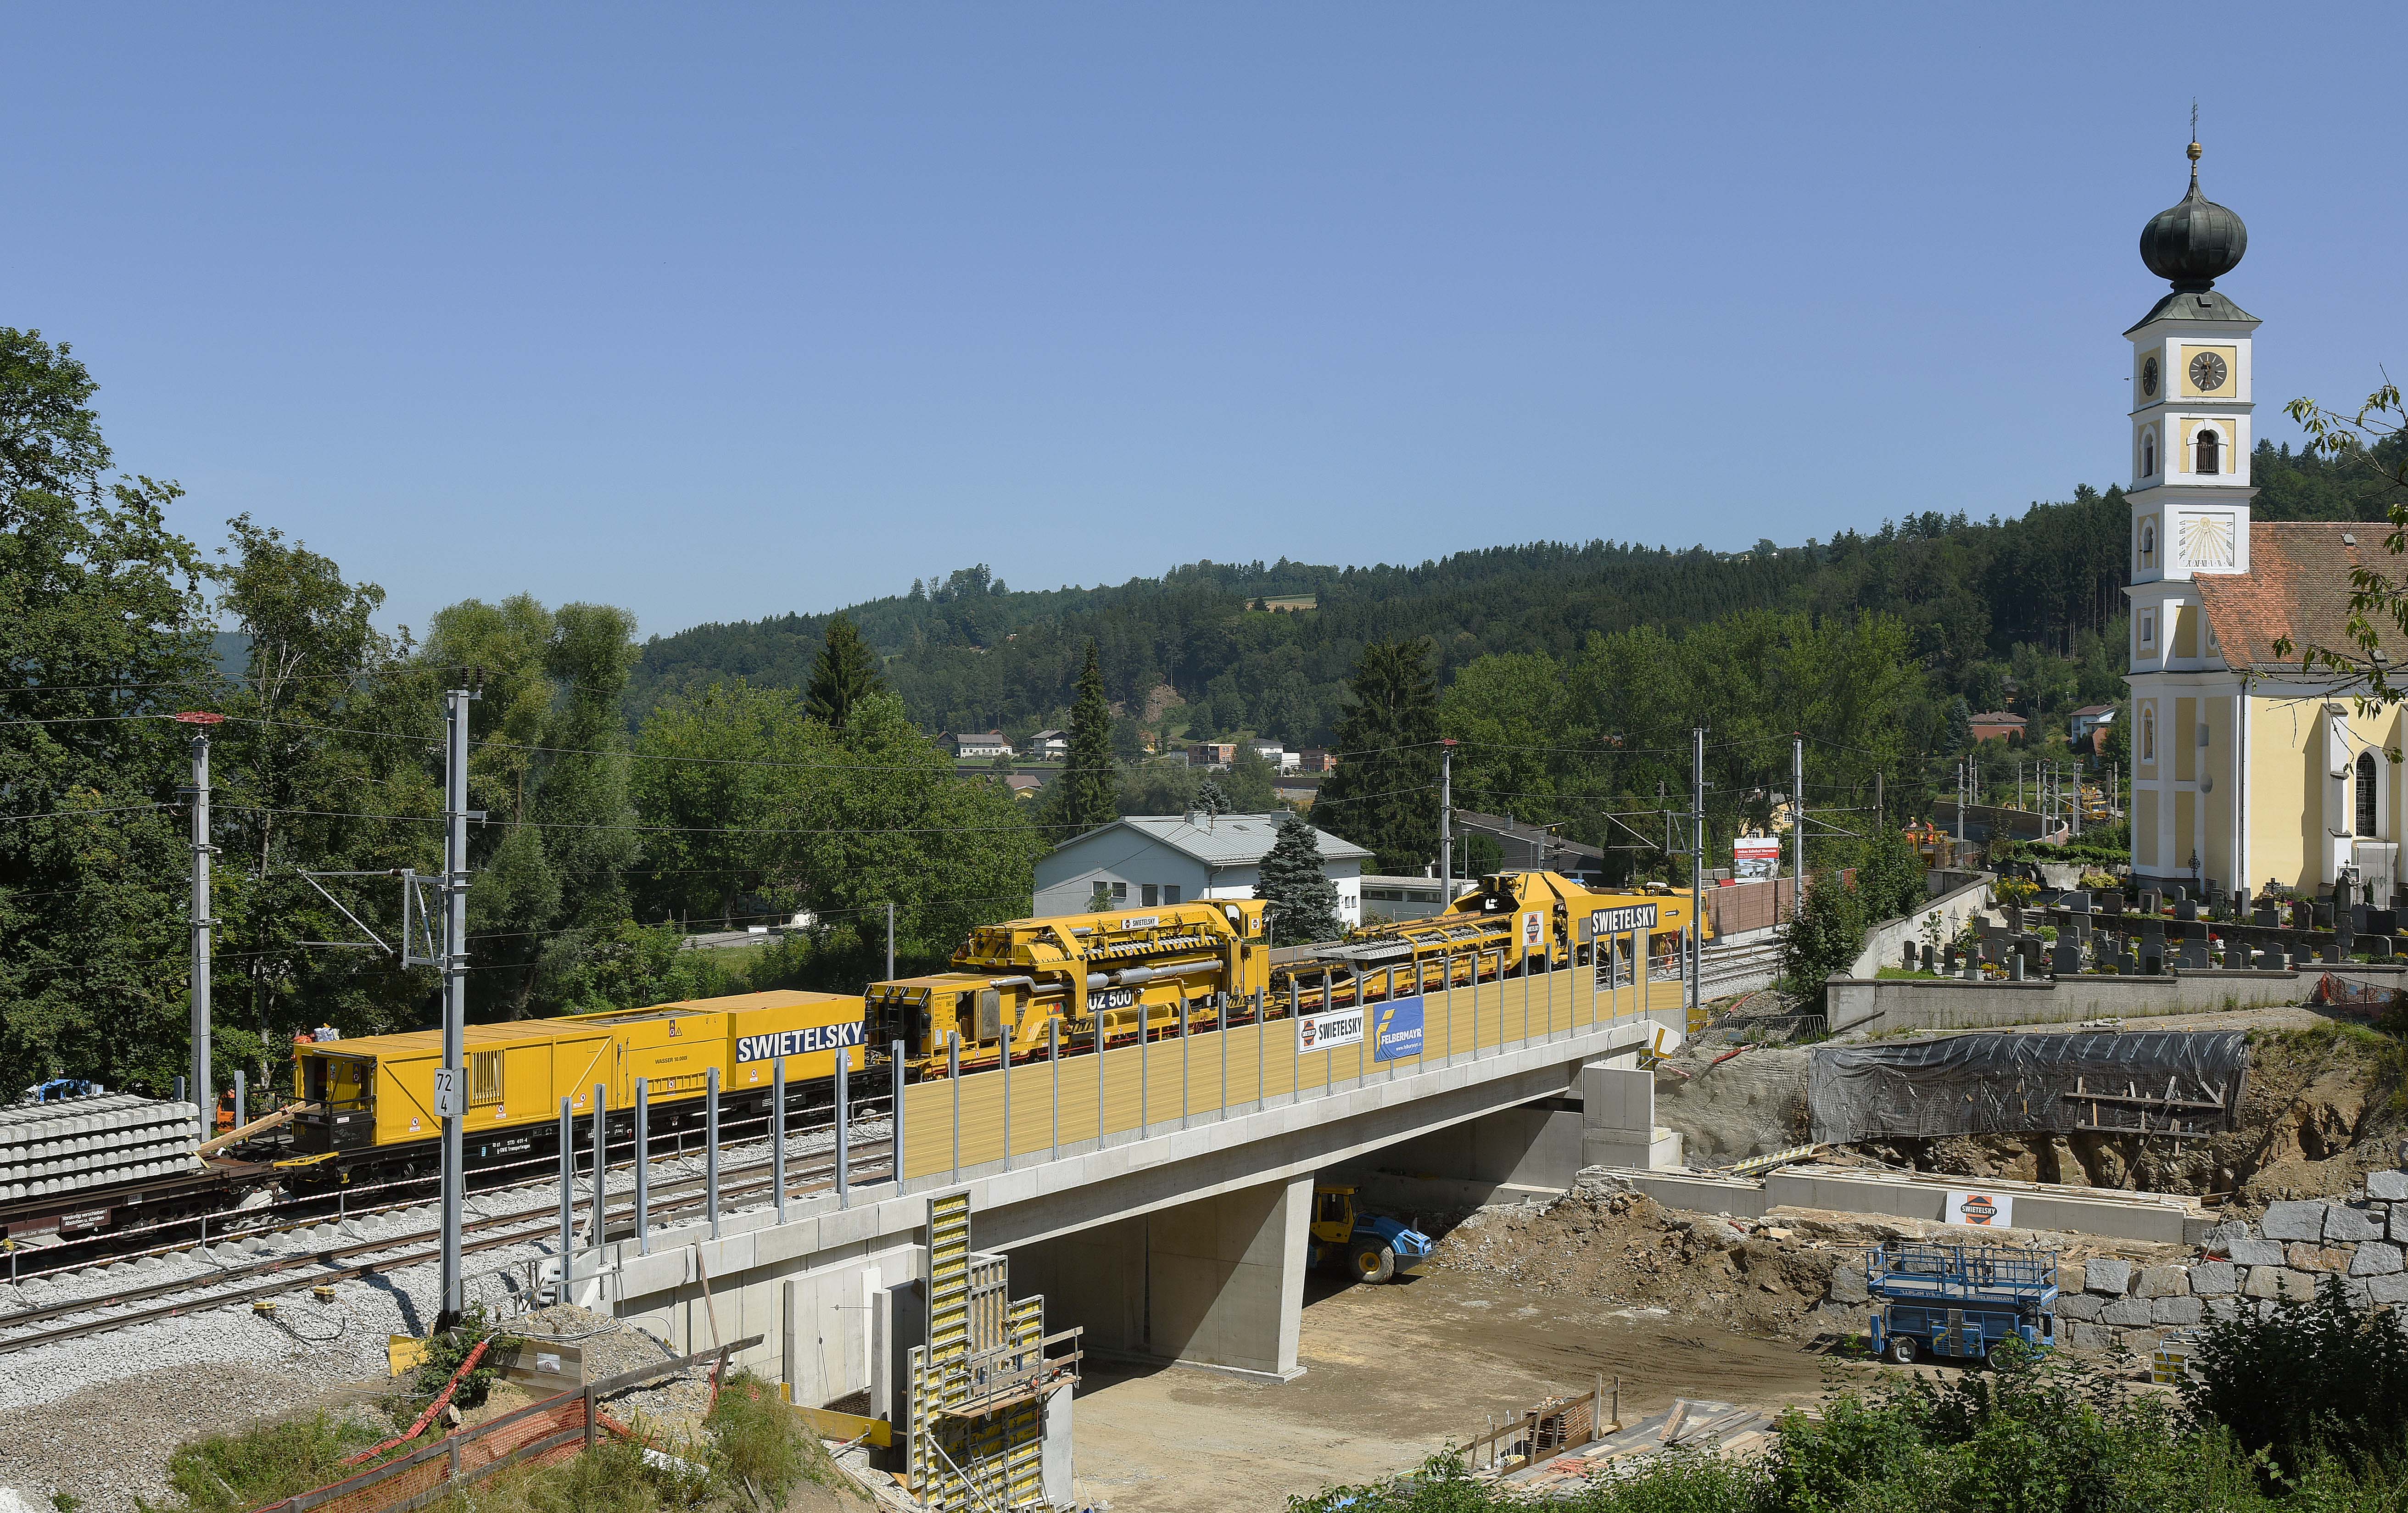 Brückenbau, Wernstein - Road and bridge construction